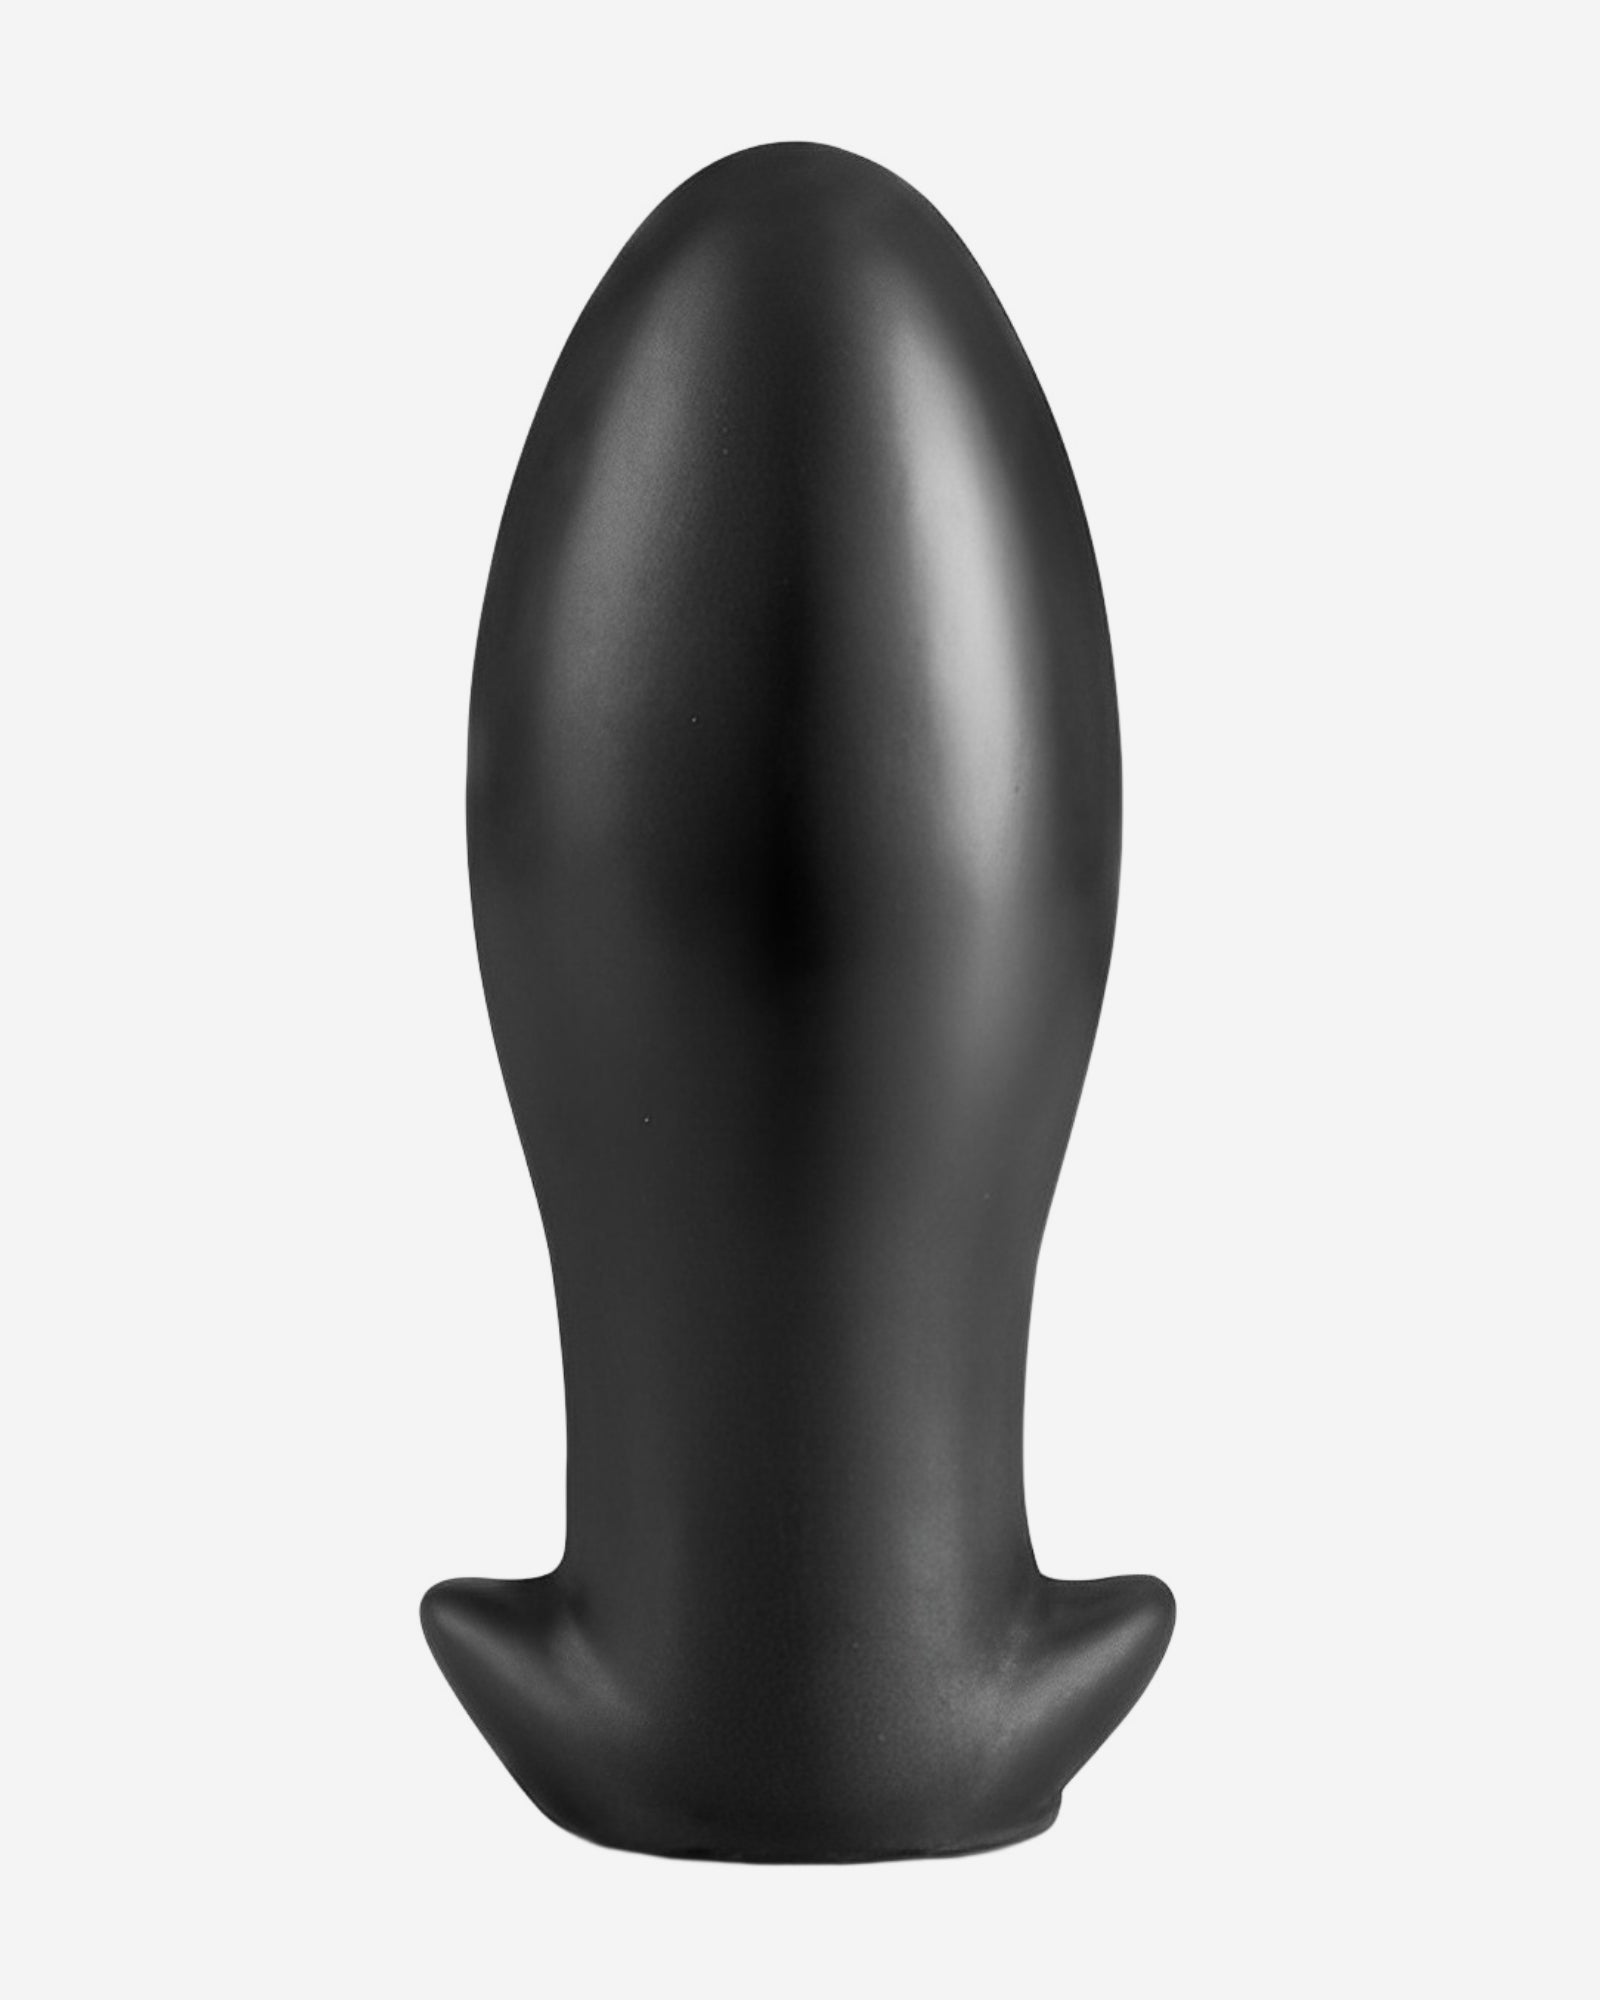 Huge anal butt plug